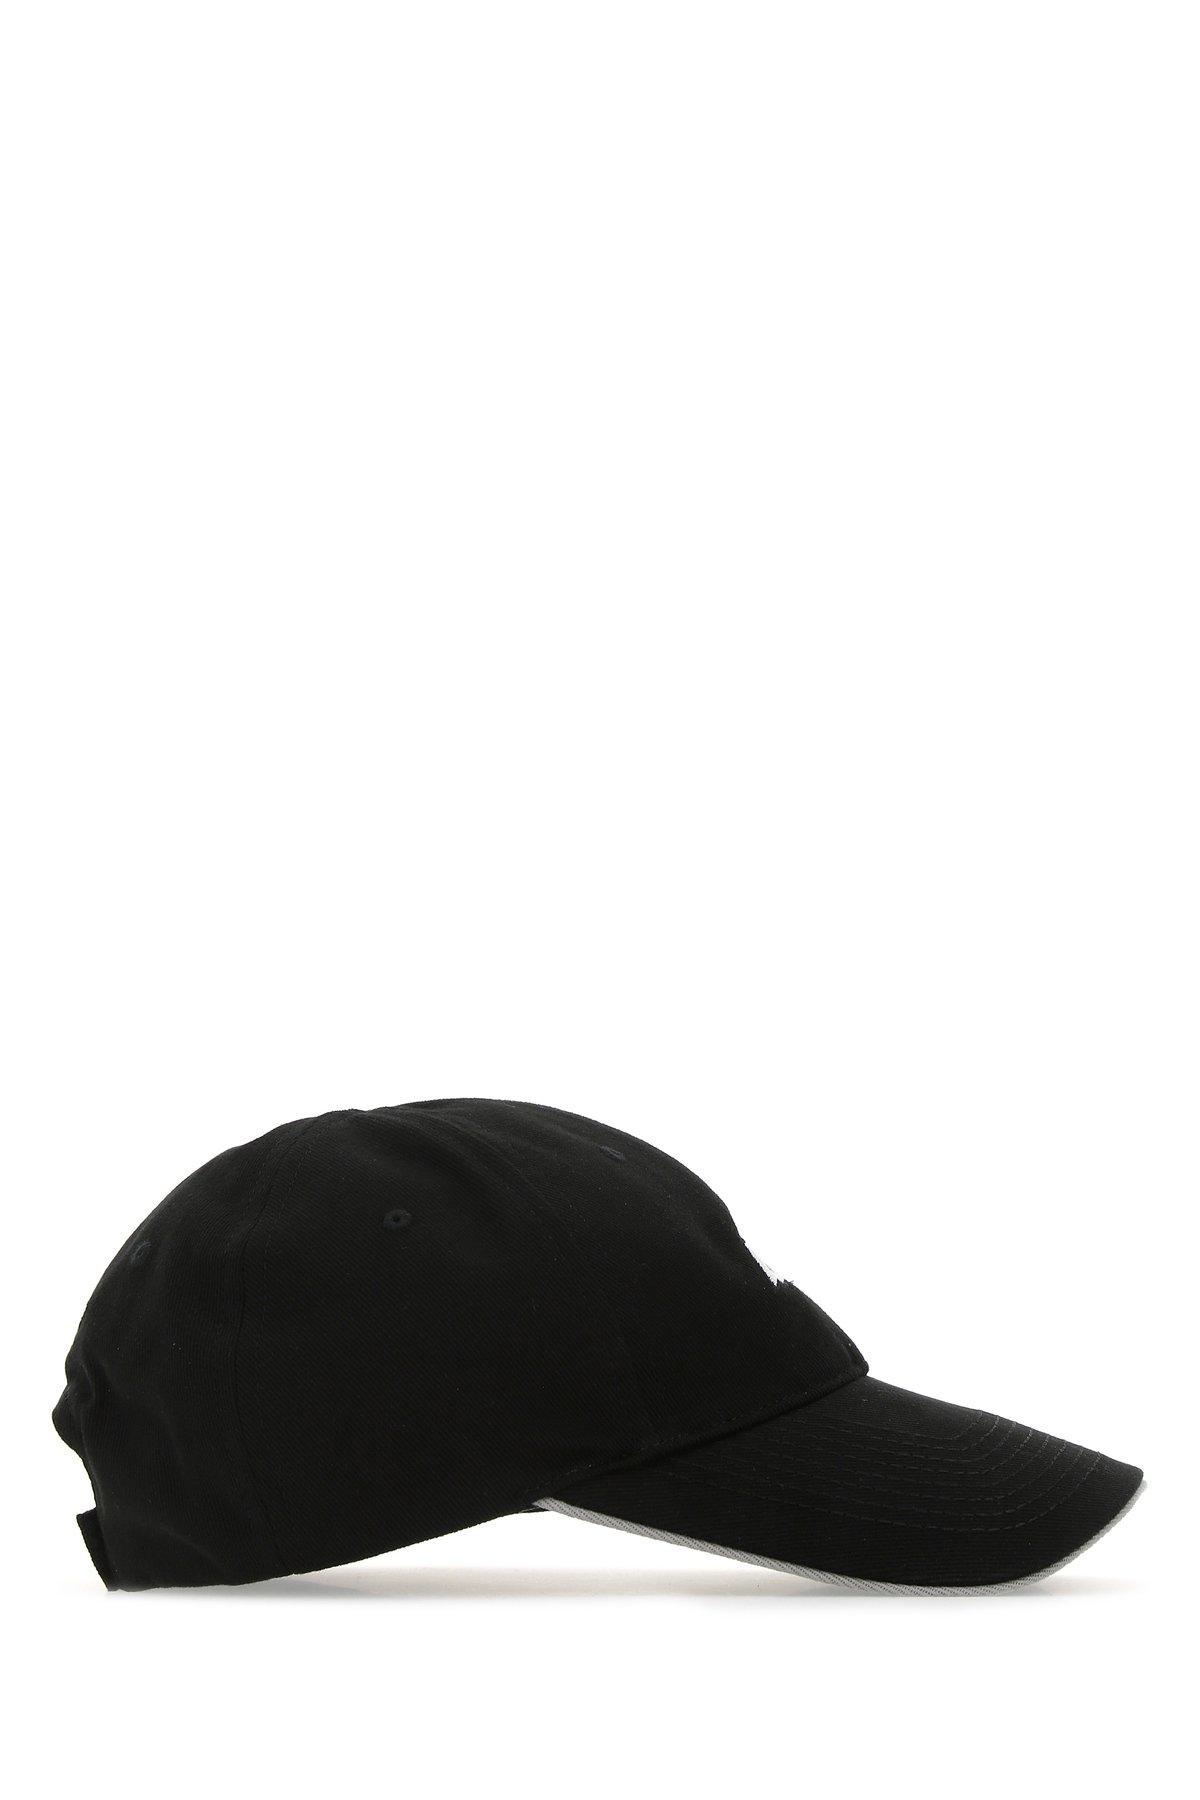 Balenciaga Cotton Blncg Baseball Cap in Black for Men - Save 13% - Lyst